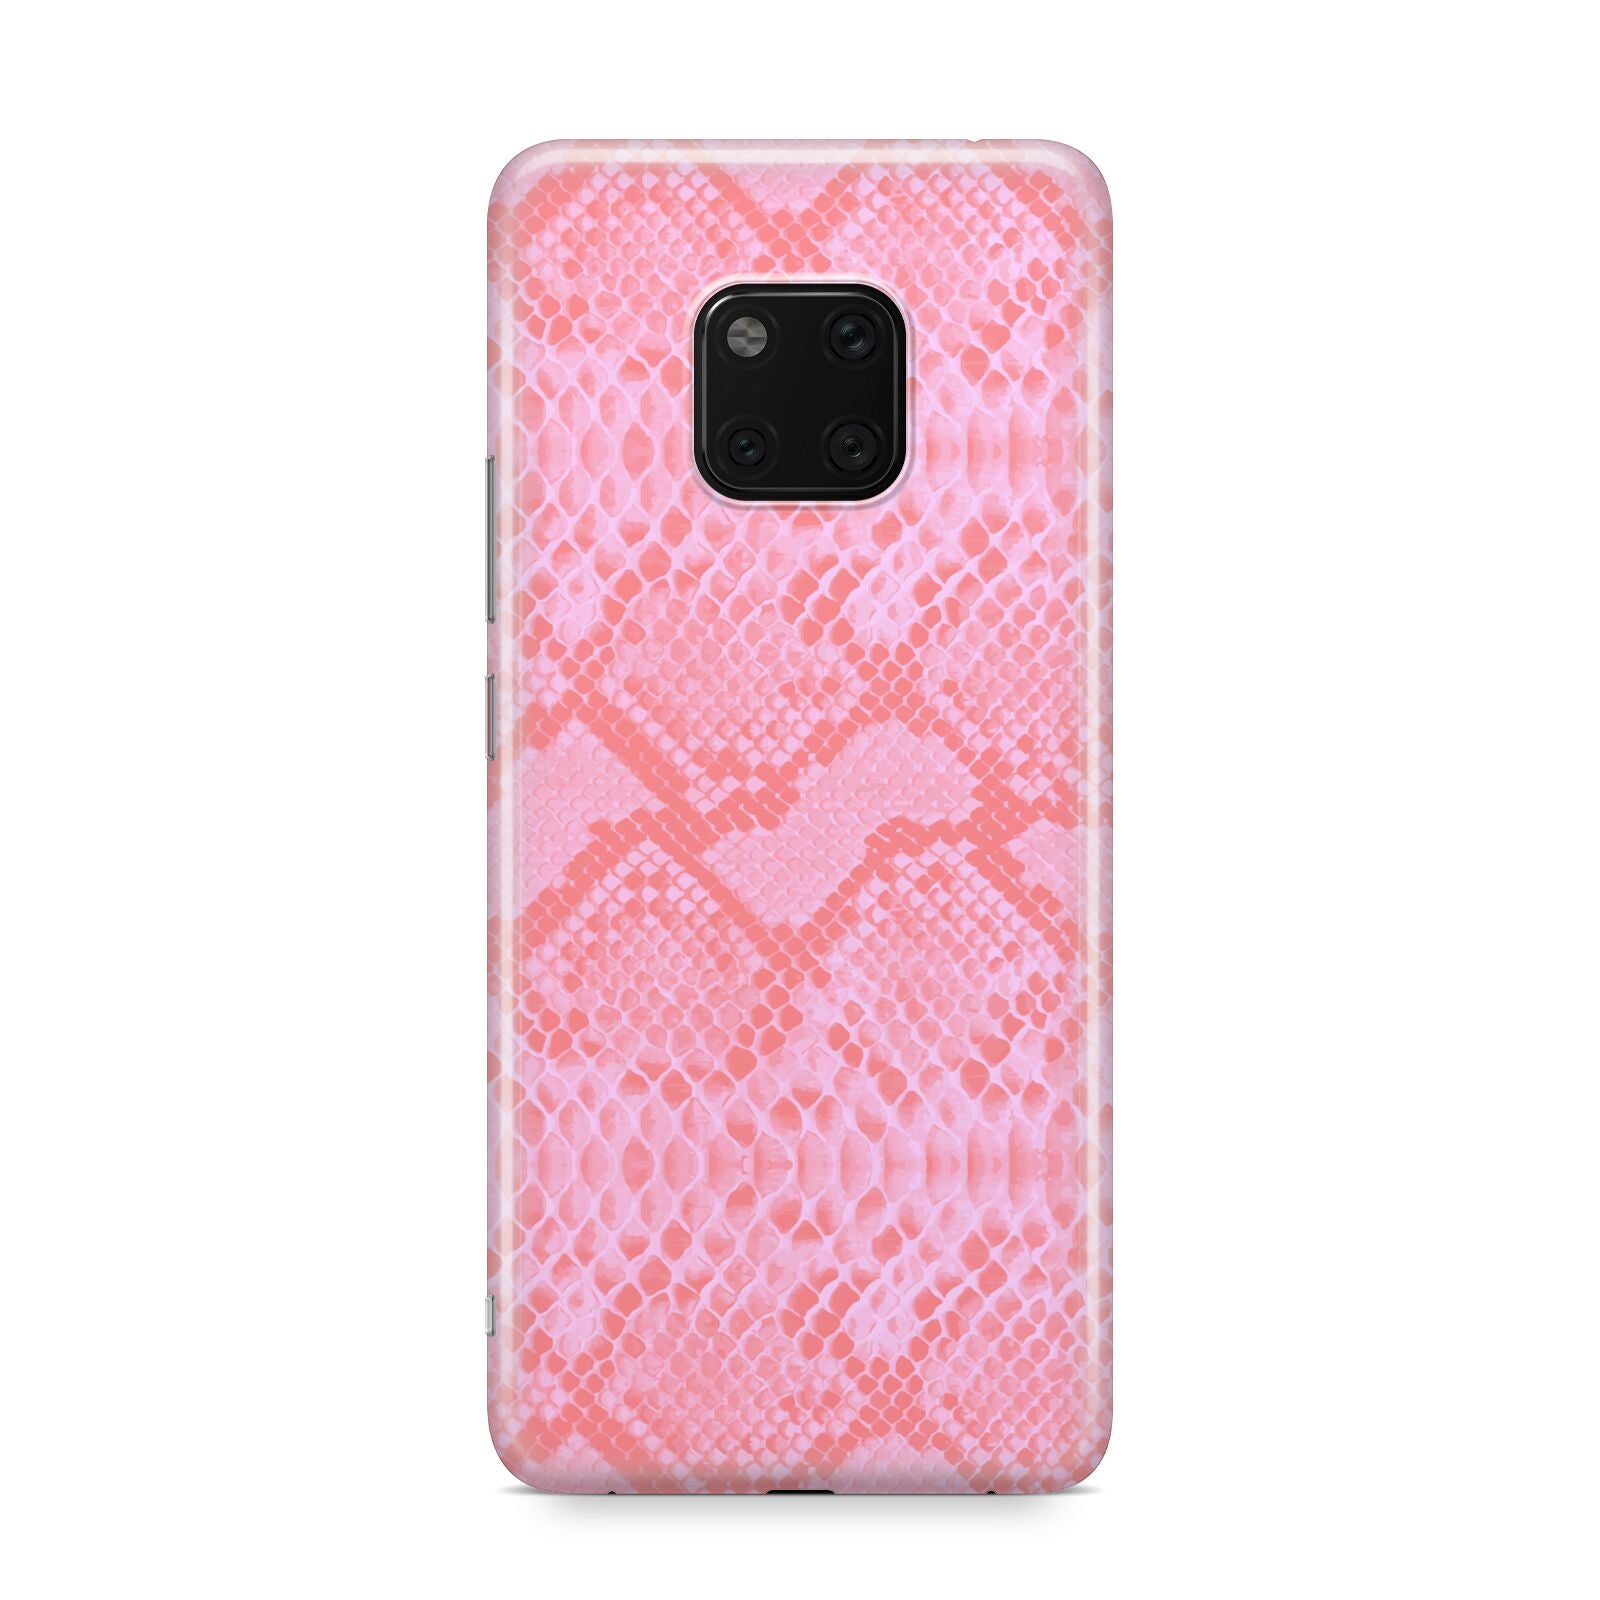 Pink Snakeskin Huawei Mate 20 Pro Phone Case